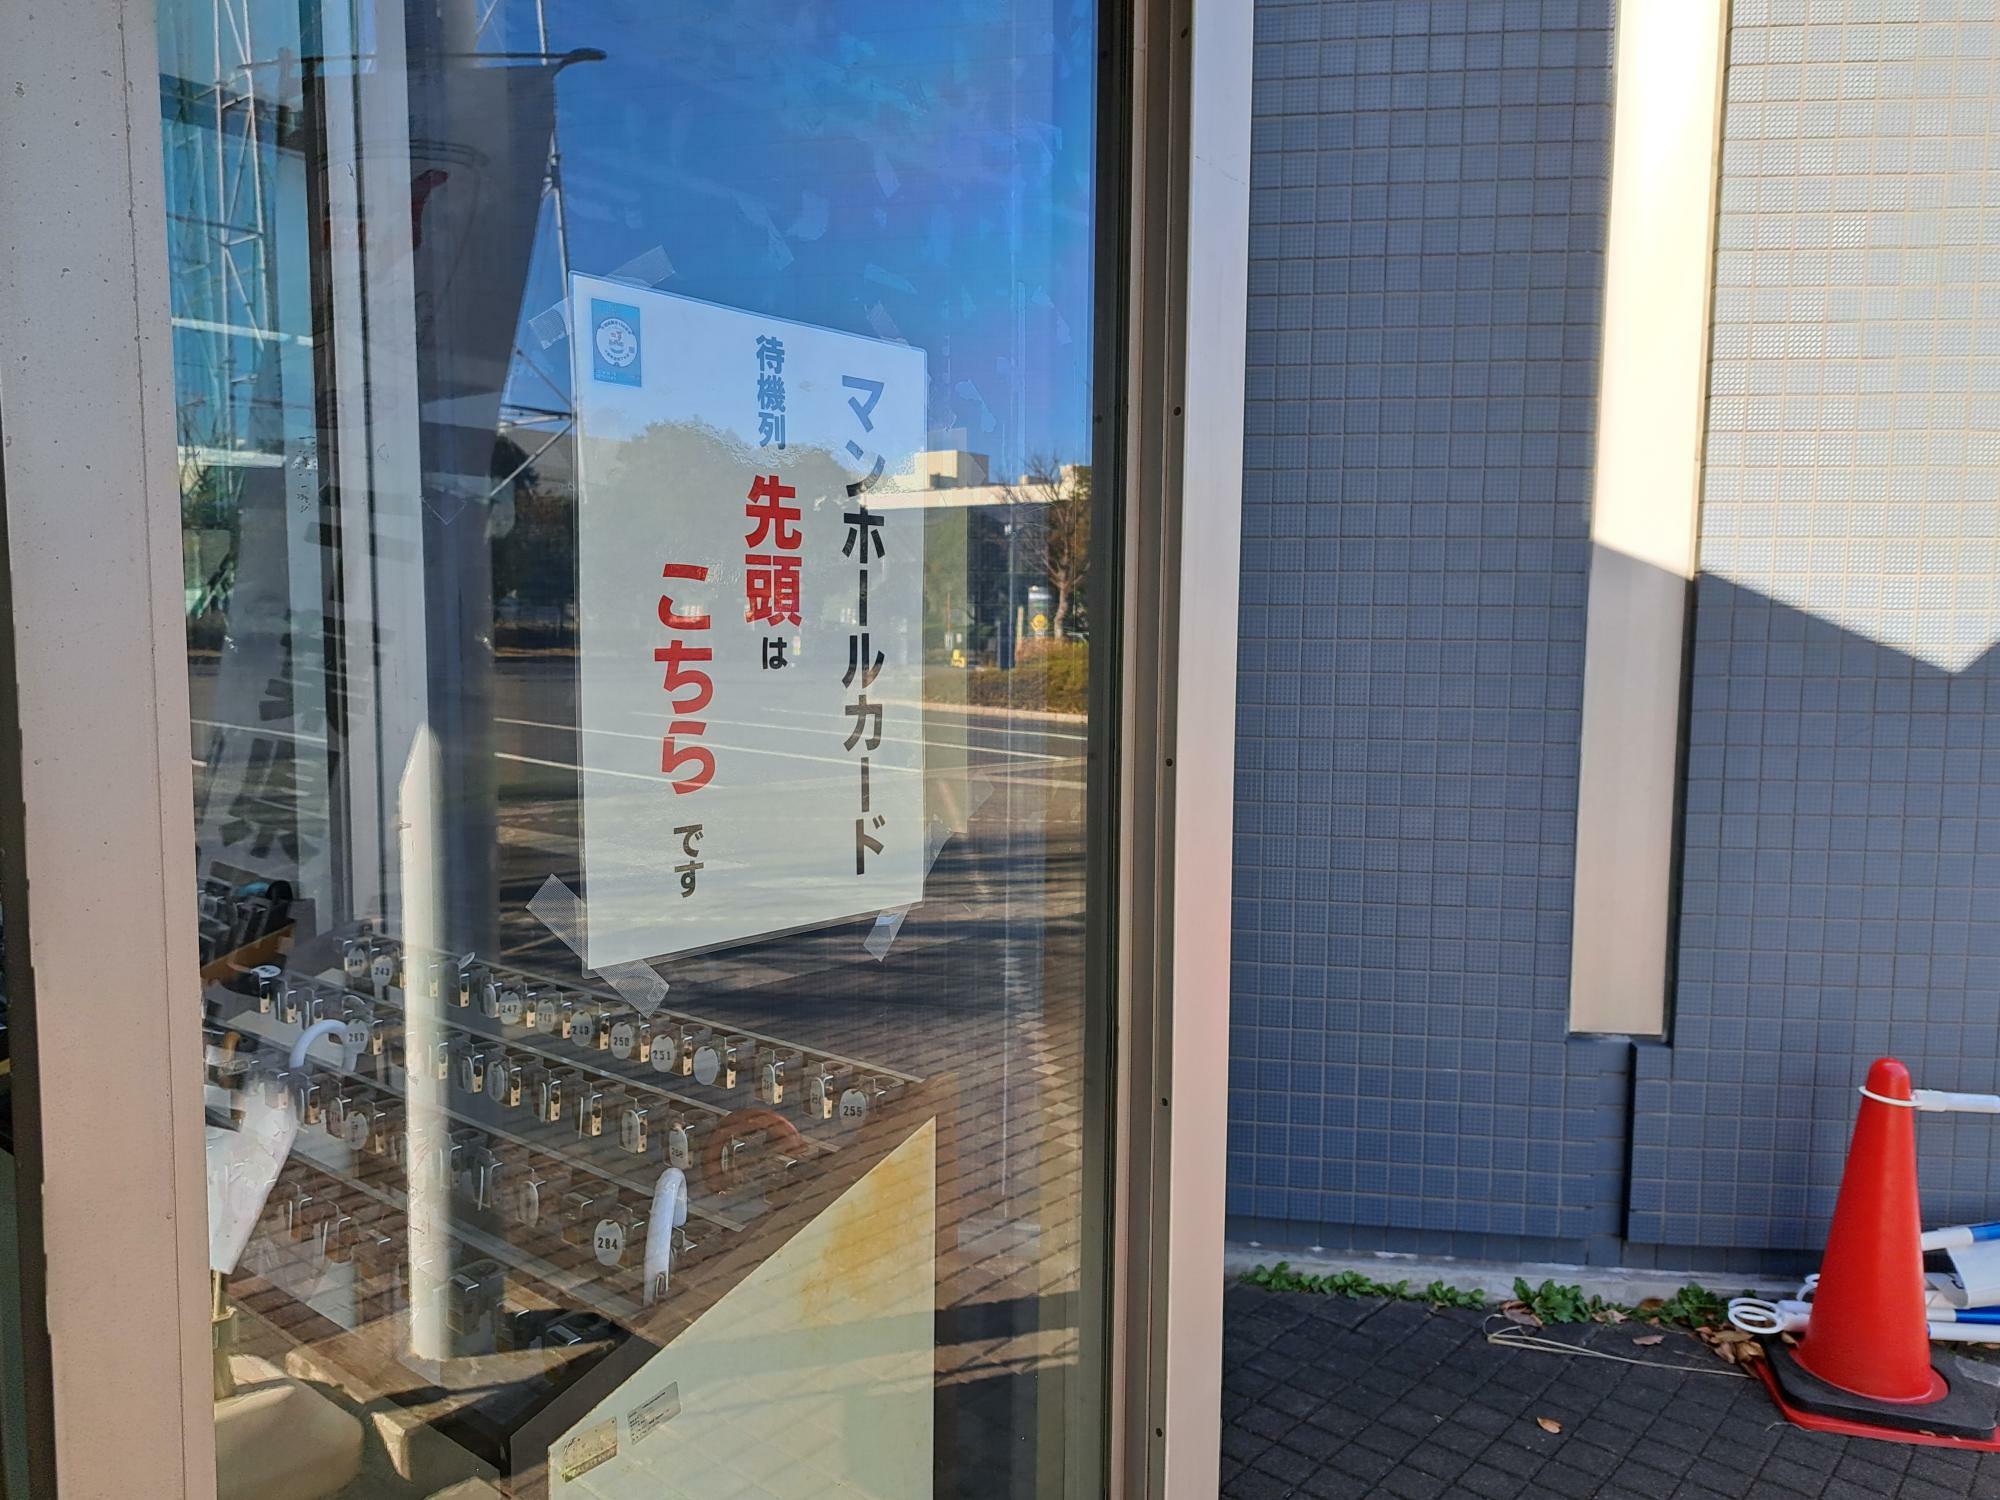 千葉県立現代産業科学館では開館前の待機場所も指定されていました。